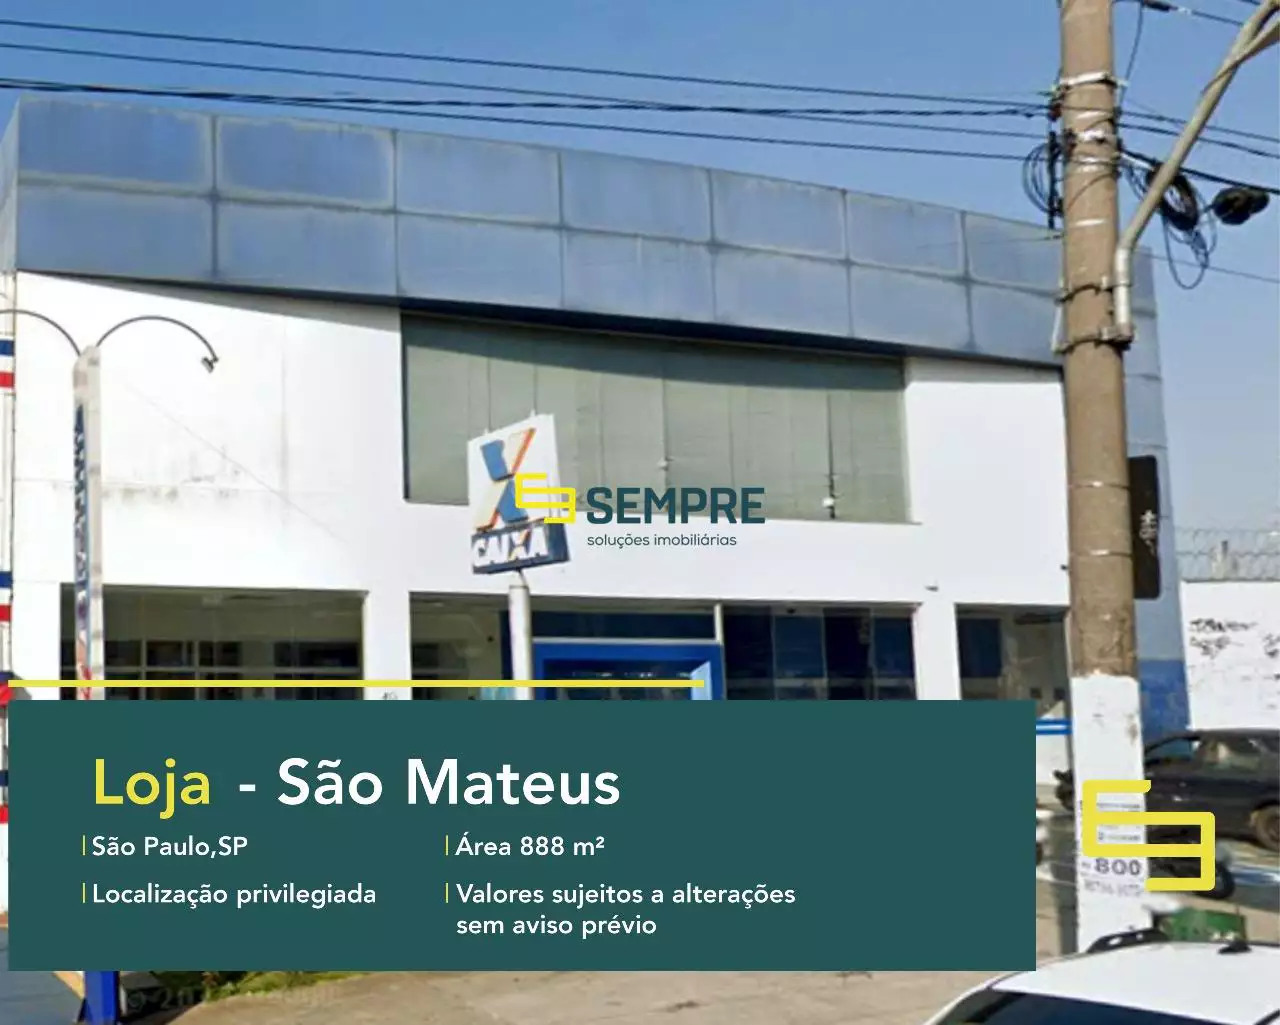 Loja para vender em São Mateus em São Paulo, em excelente localização. O estabelecimento comercial conta com área de 888 m².